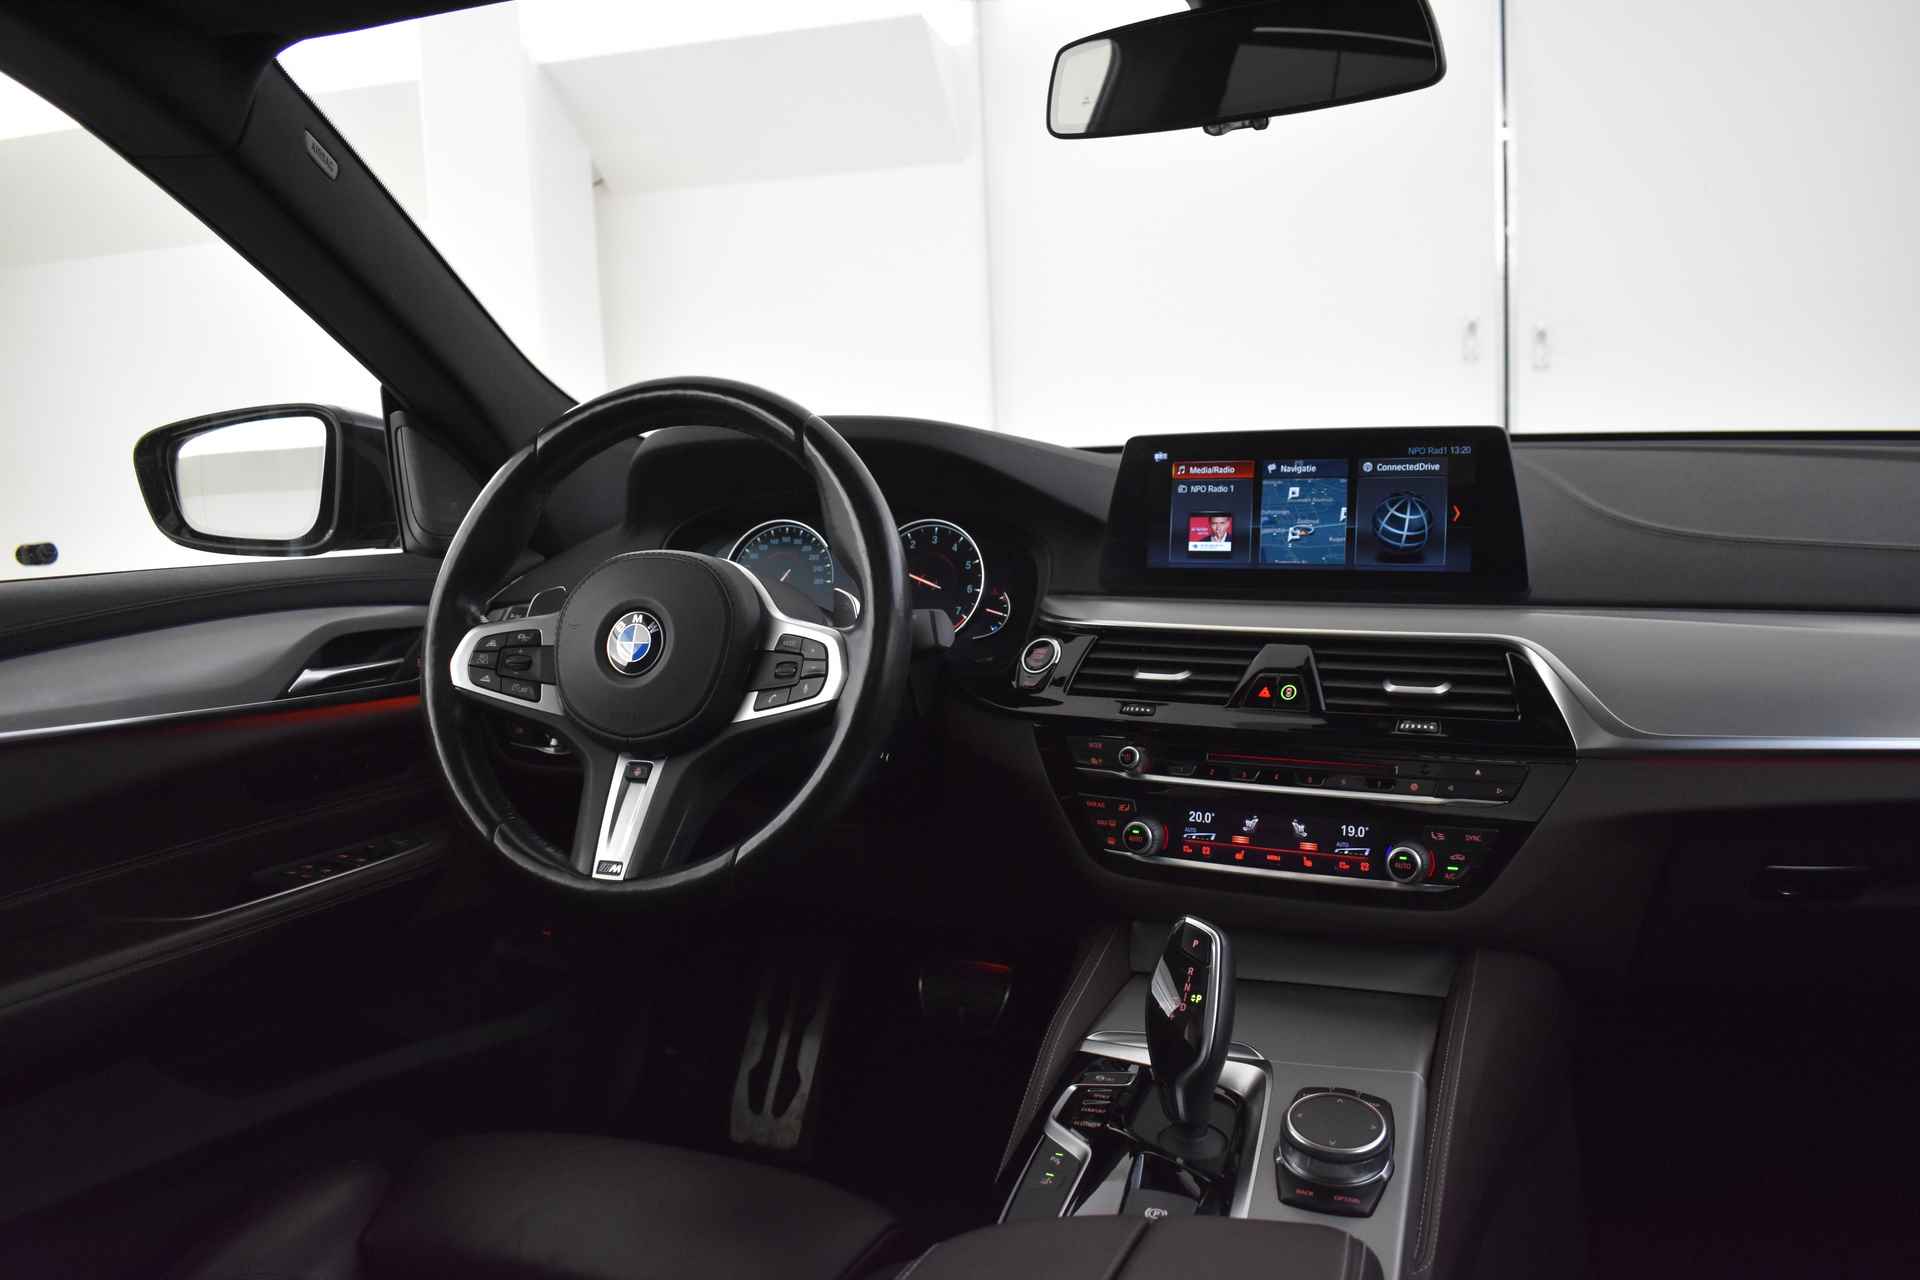 BMW 6 Serie Gran Turismo 640i High Executive M Sport Automaat / Panoramadak / Adaptieve LED / Active Cruise Control / Harman Kardon / Navigatie Professional / Comfort Access - 12/58